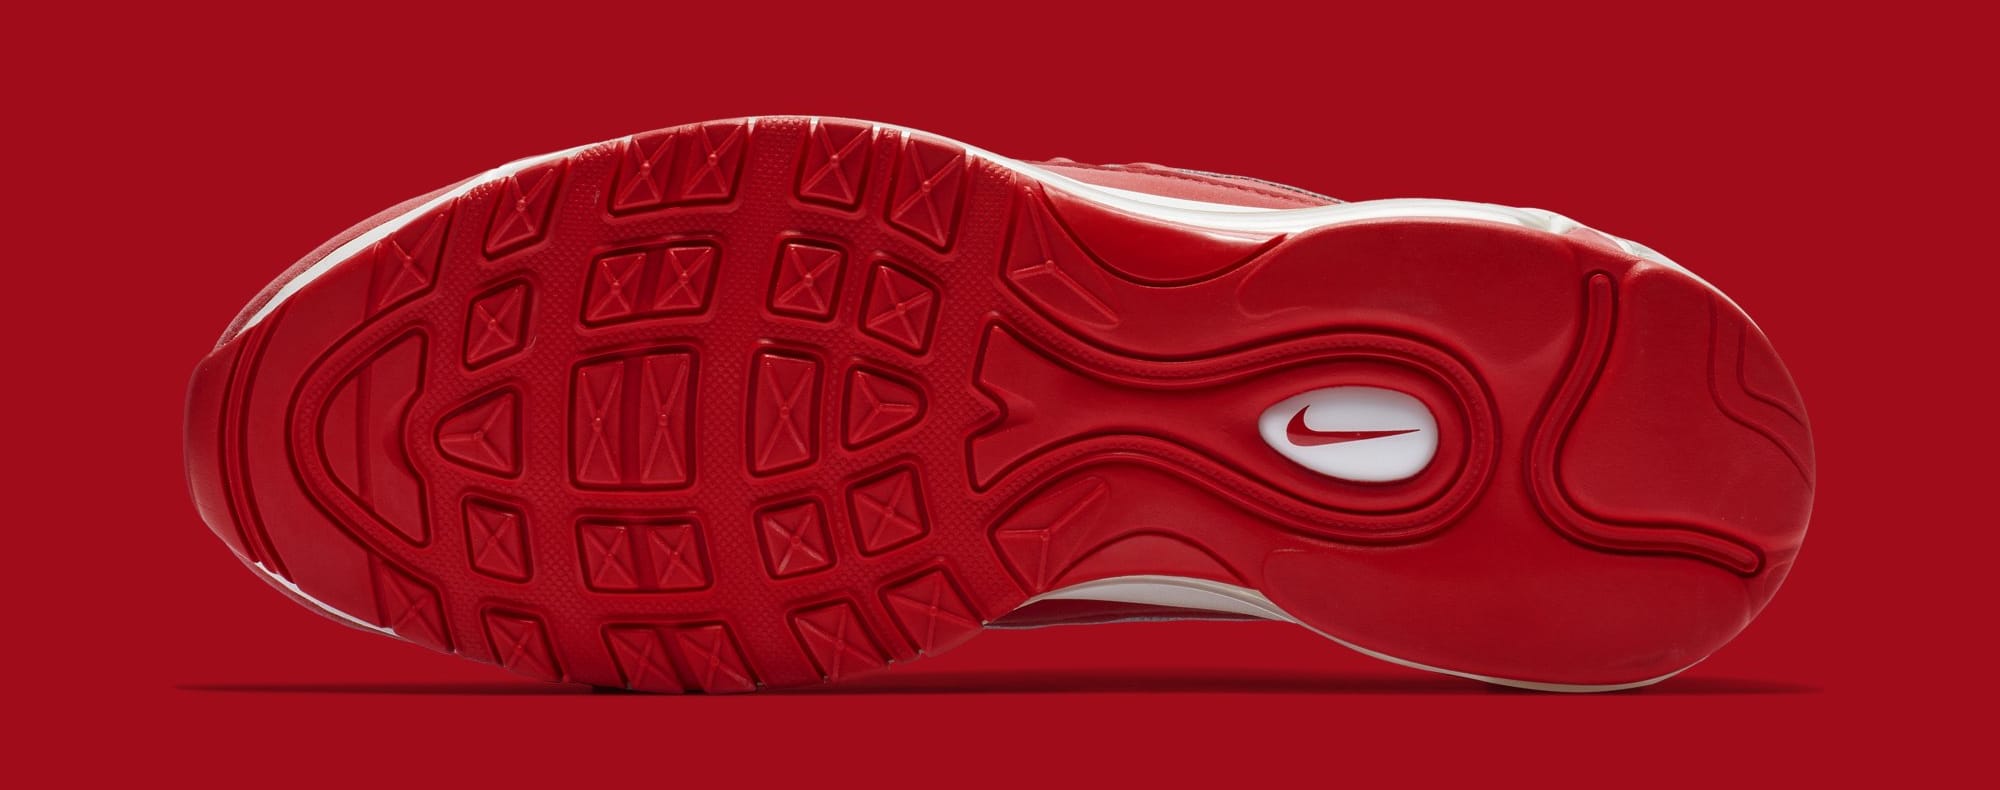 Nike Air Max 98 'University Red' 640744 